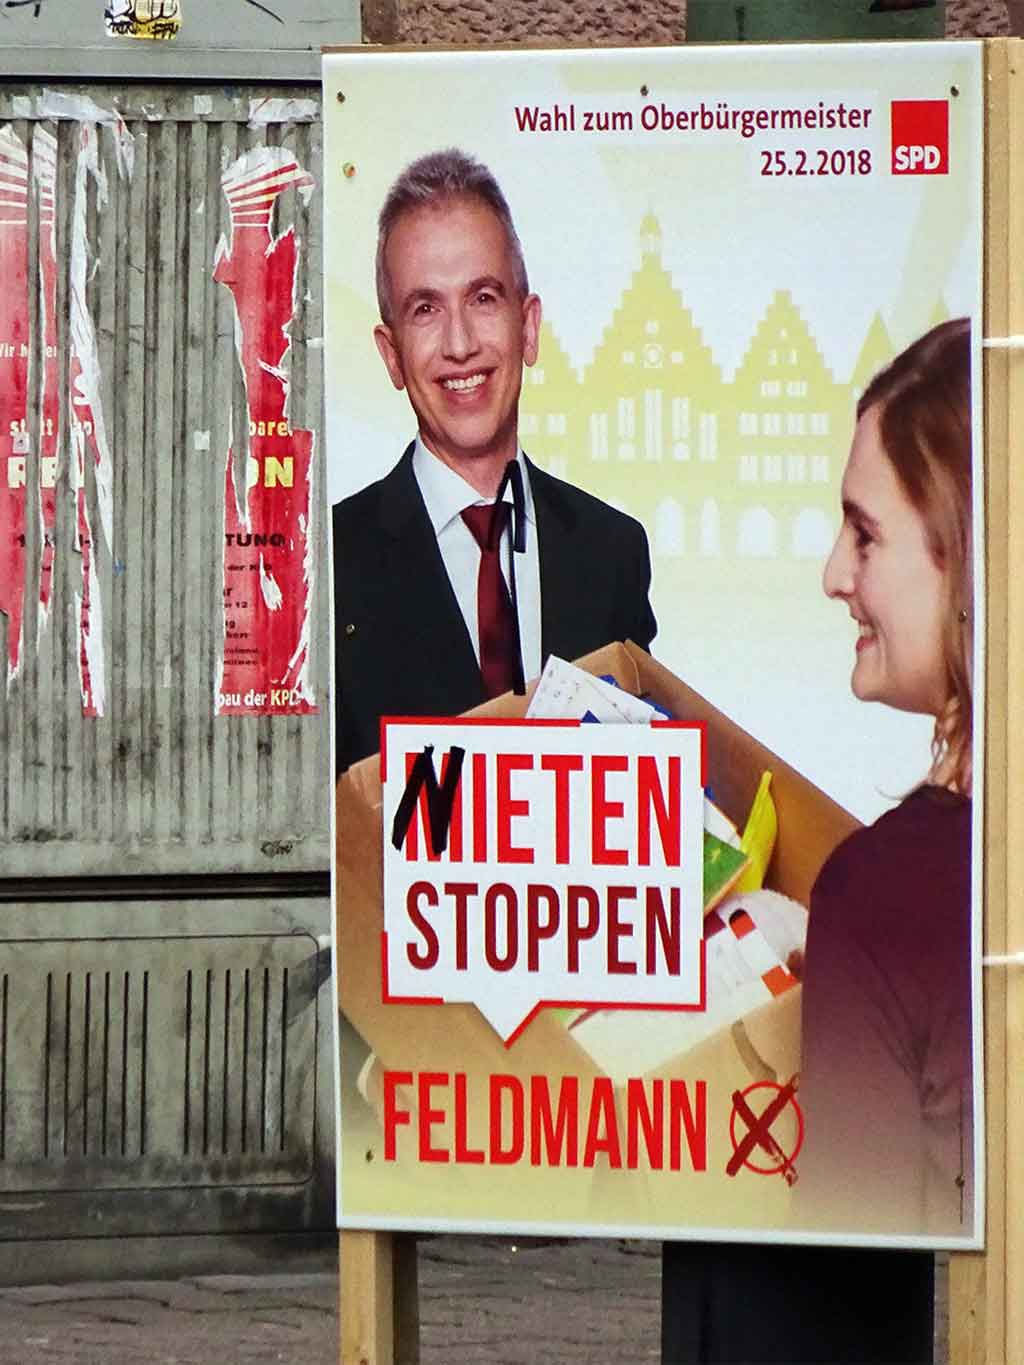 Wahlplakate der Kandidatinnen und Kandidaten zur OB-Wahl 2018 in Frankfurt am Main